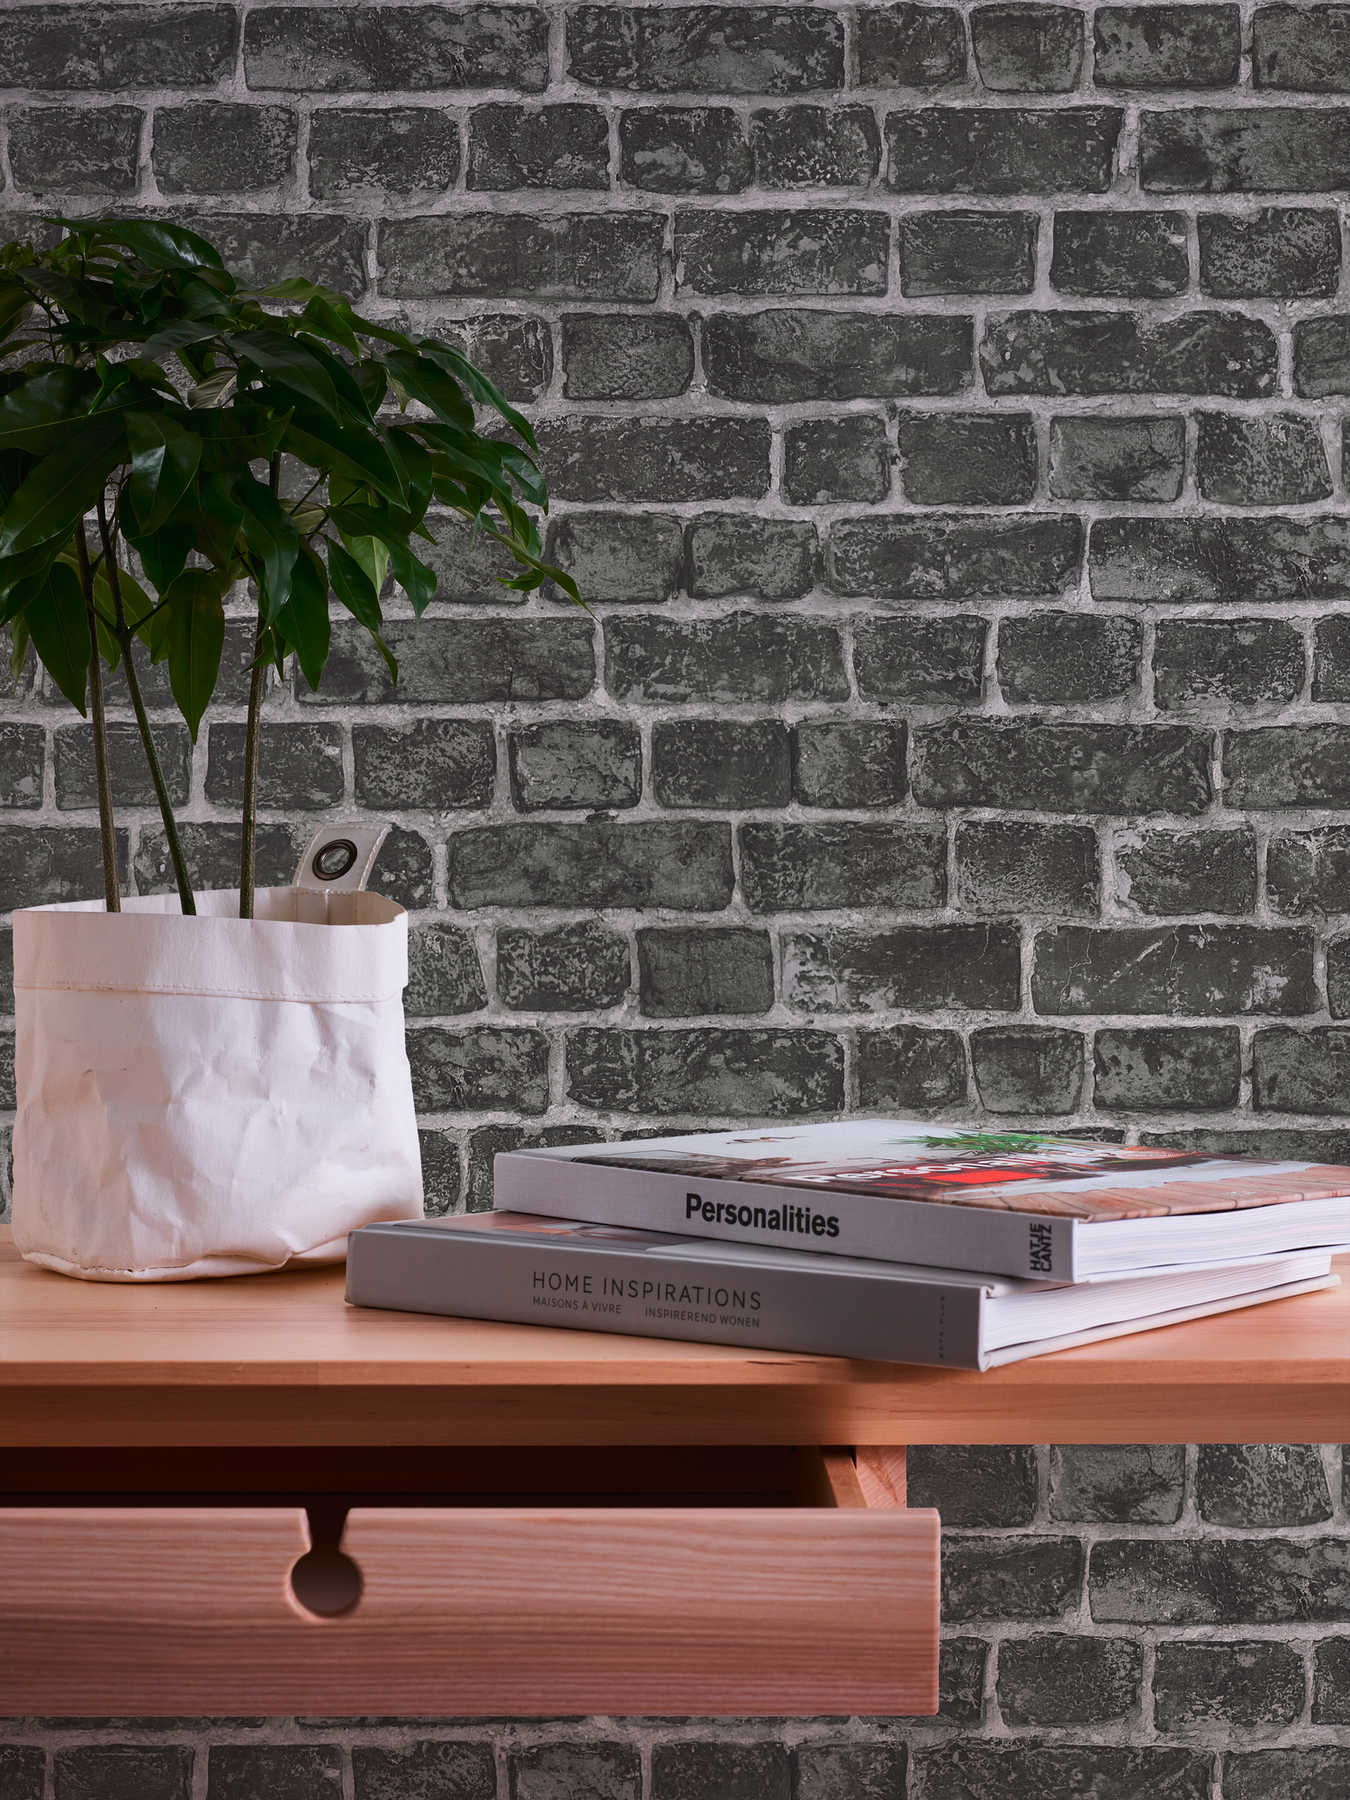             Papel pintado de piedra natural con ladrillos grises oscuros y juntas claras - negro, gris
        